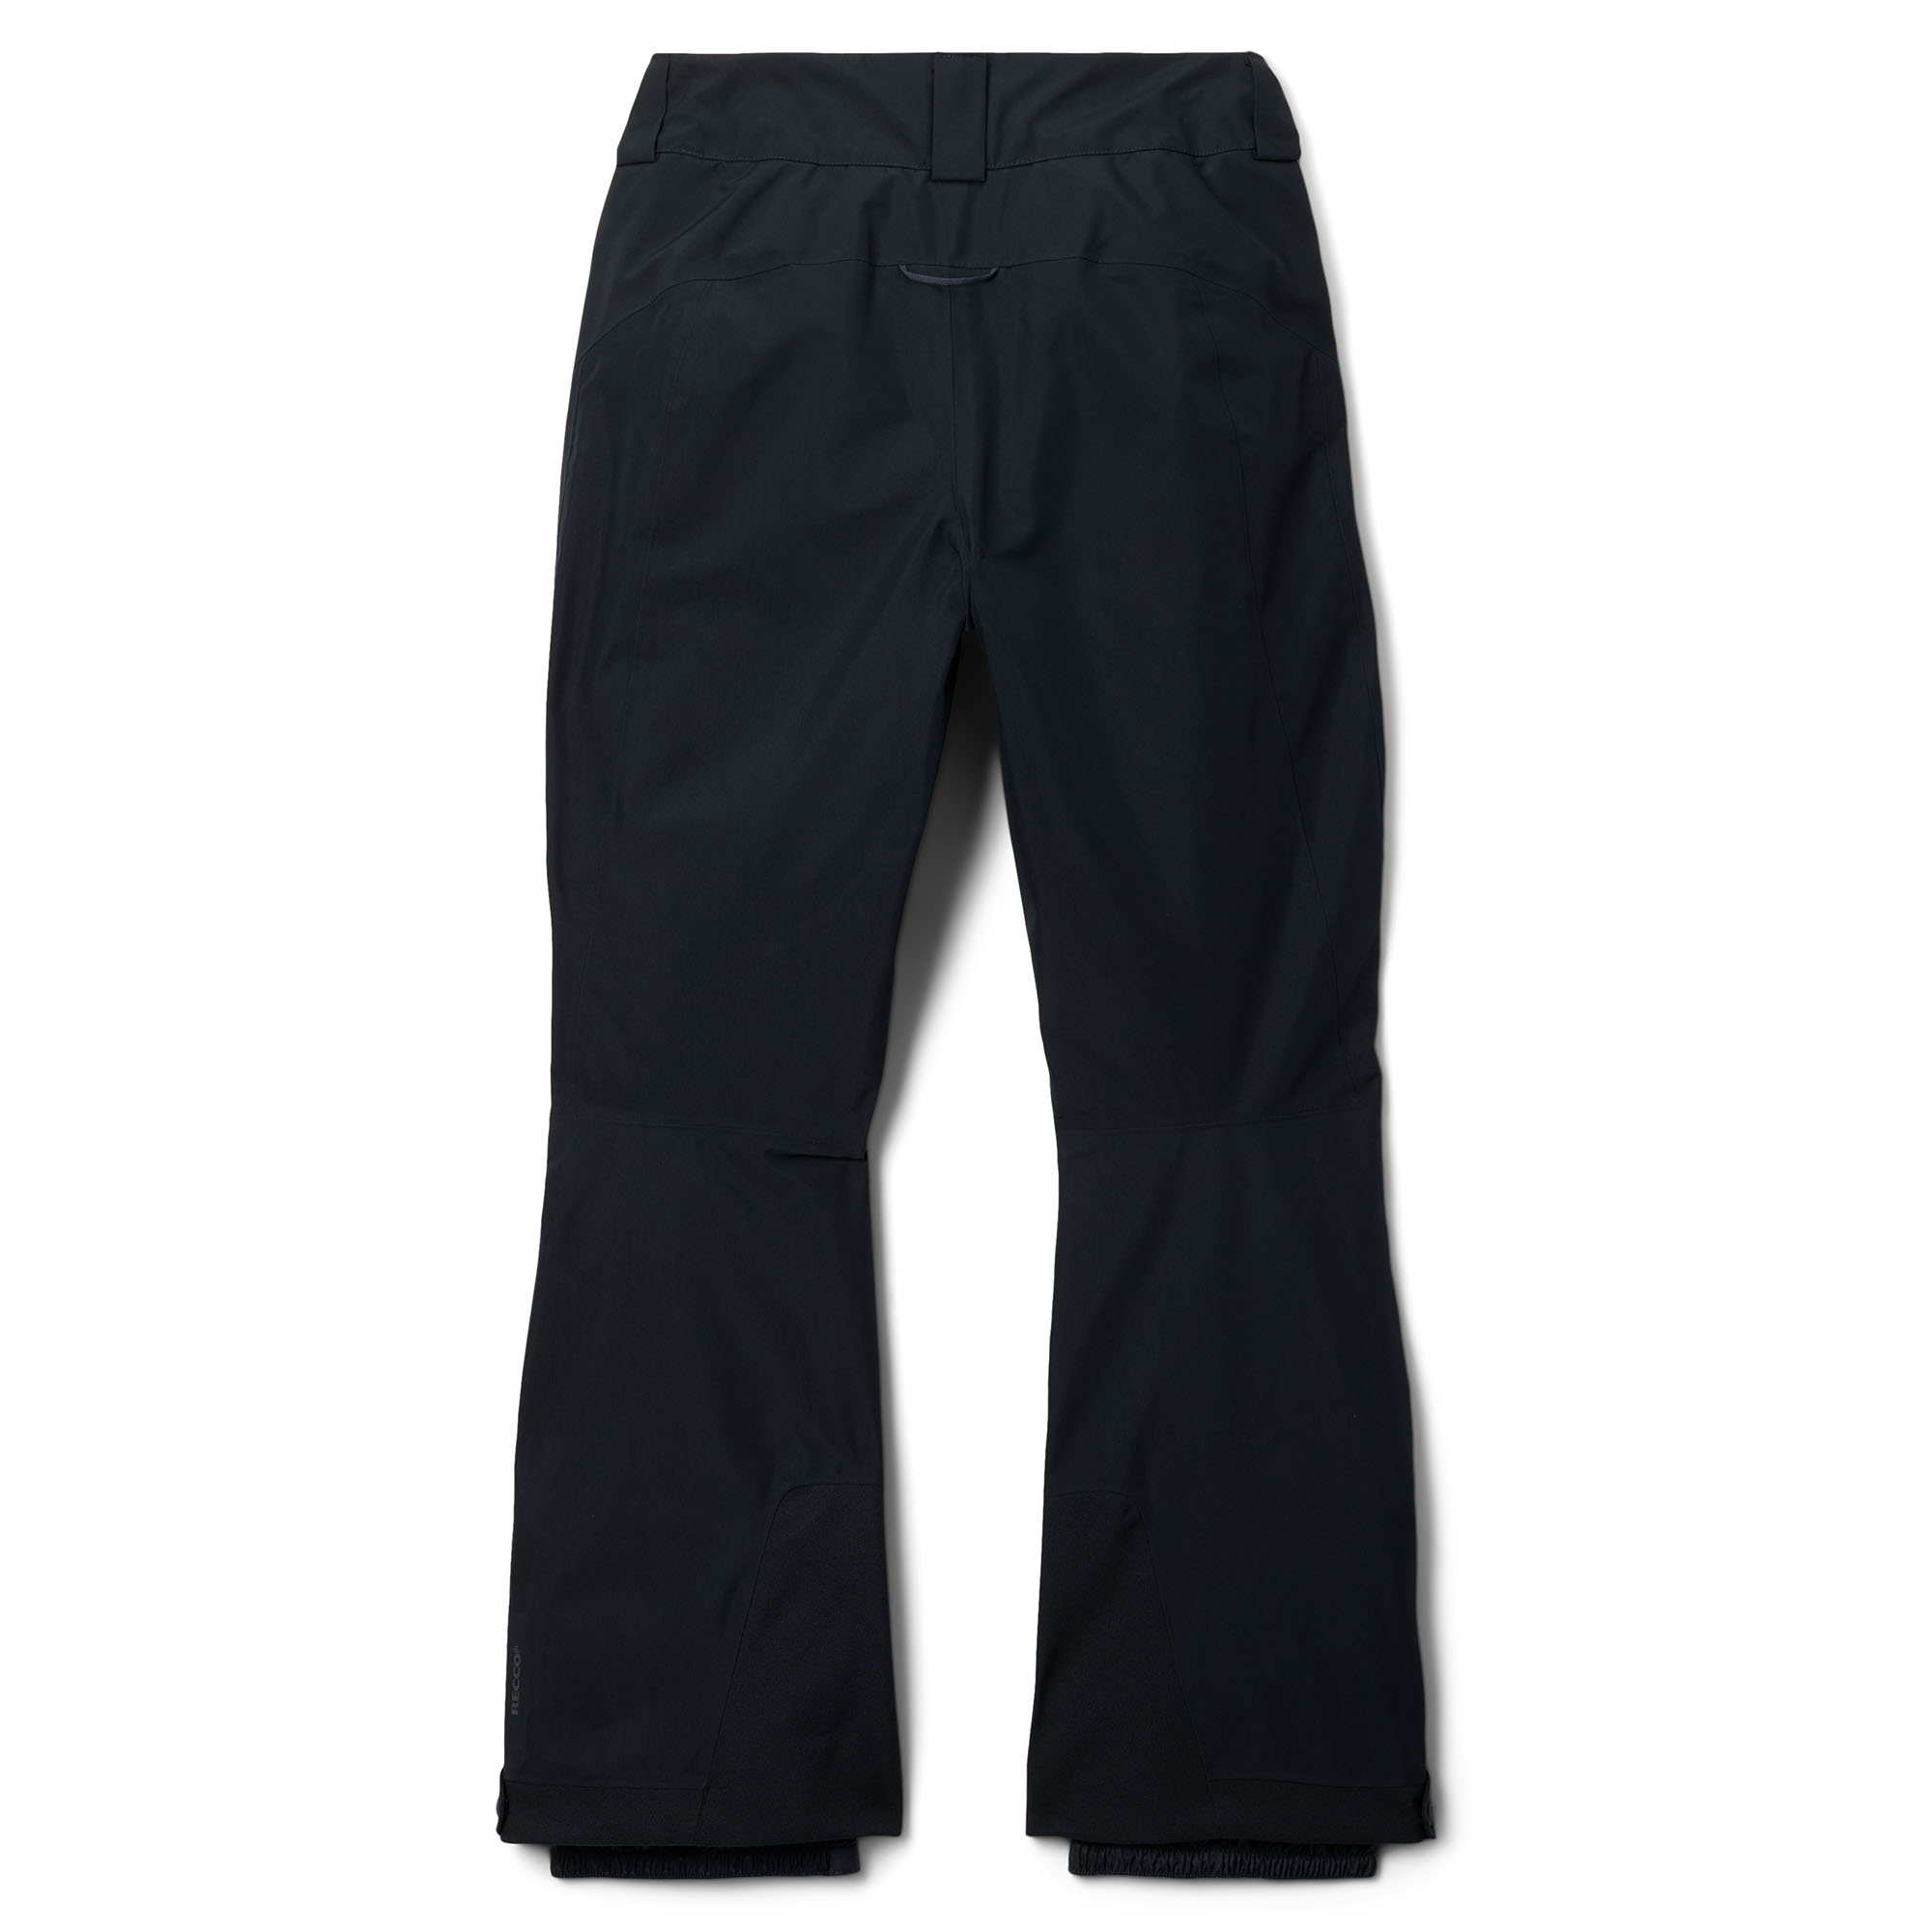 Mountain Hardwear Cloud Bank Gore-Tex Insulated Pant - Women's